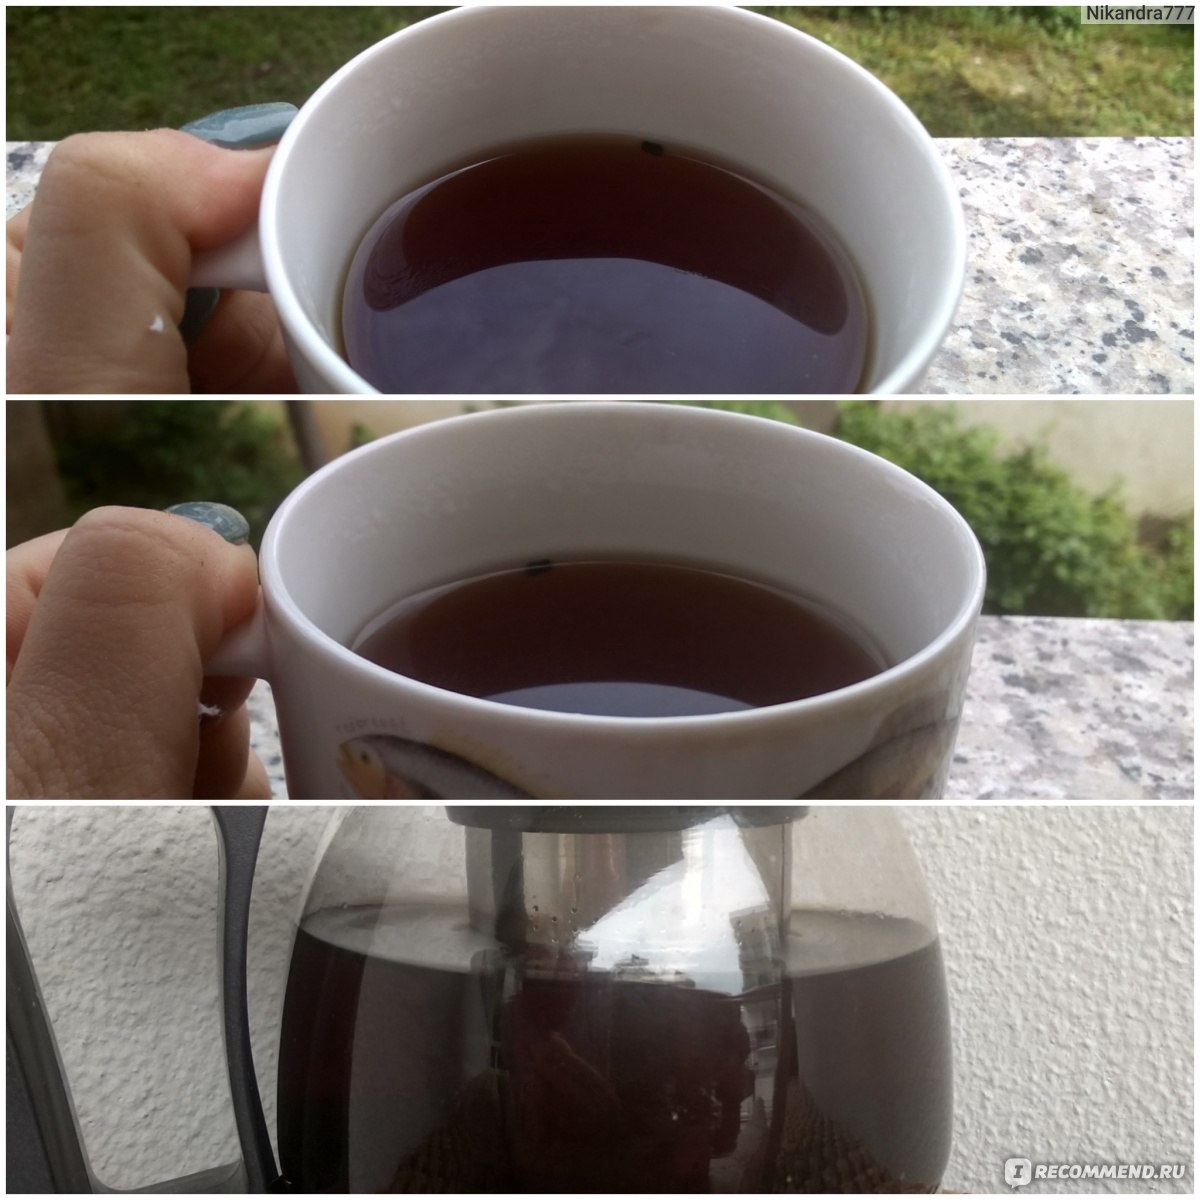 Чай берга